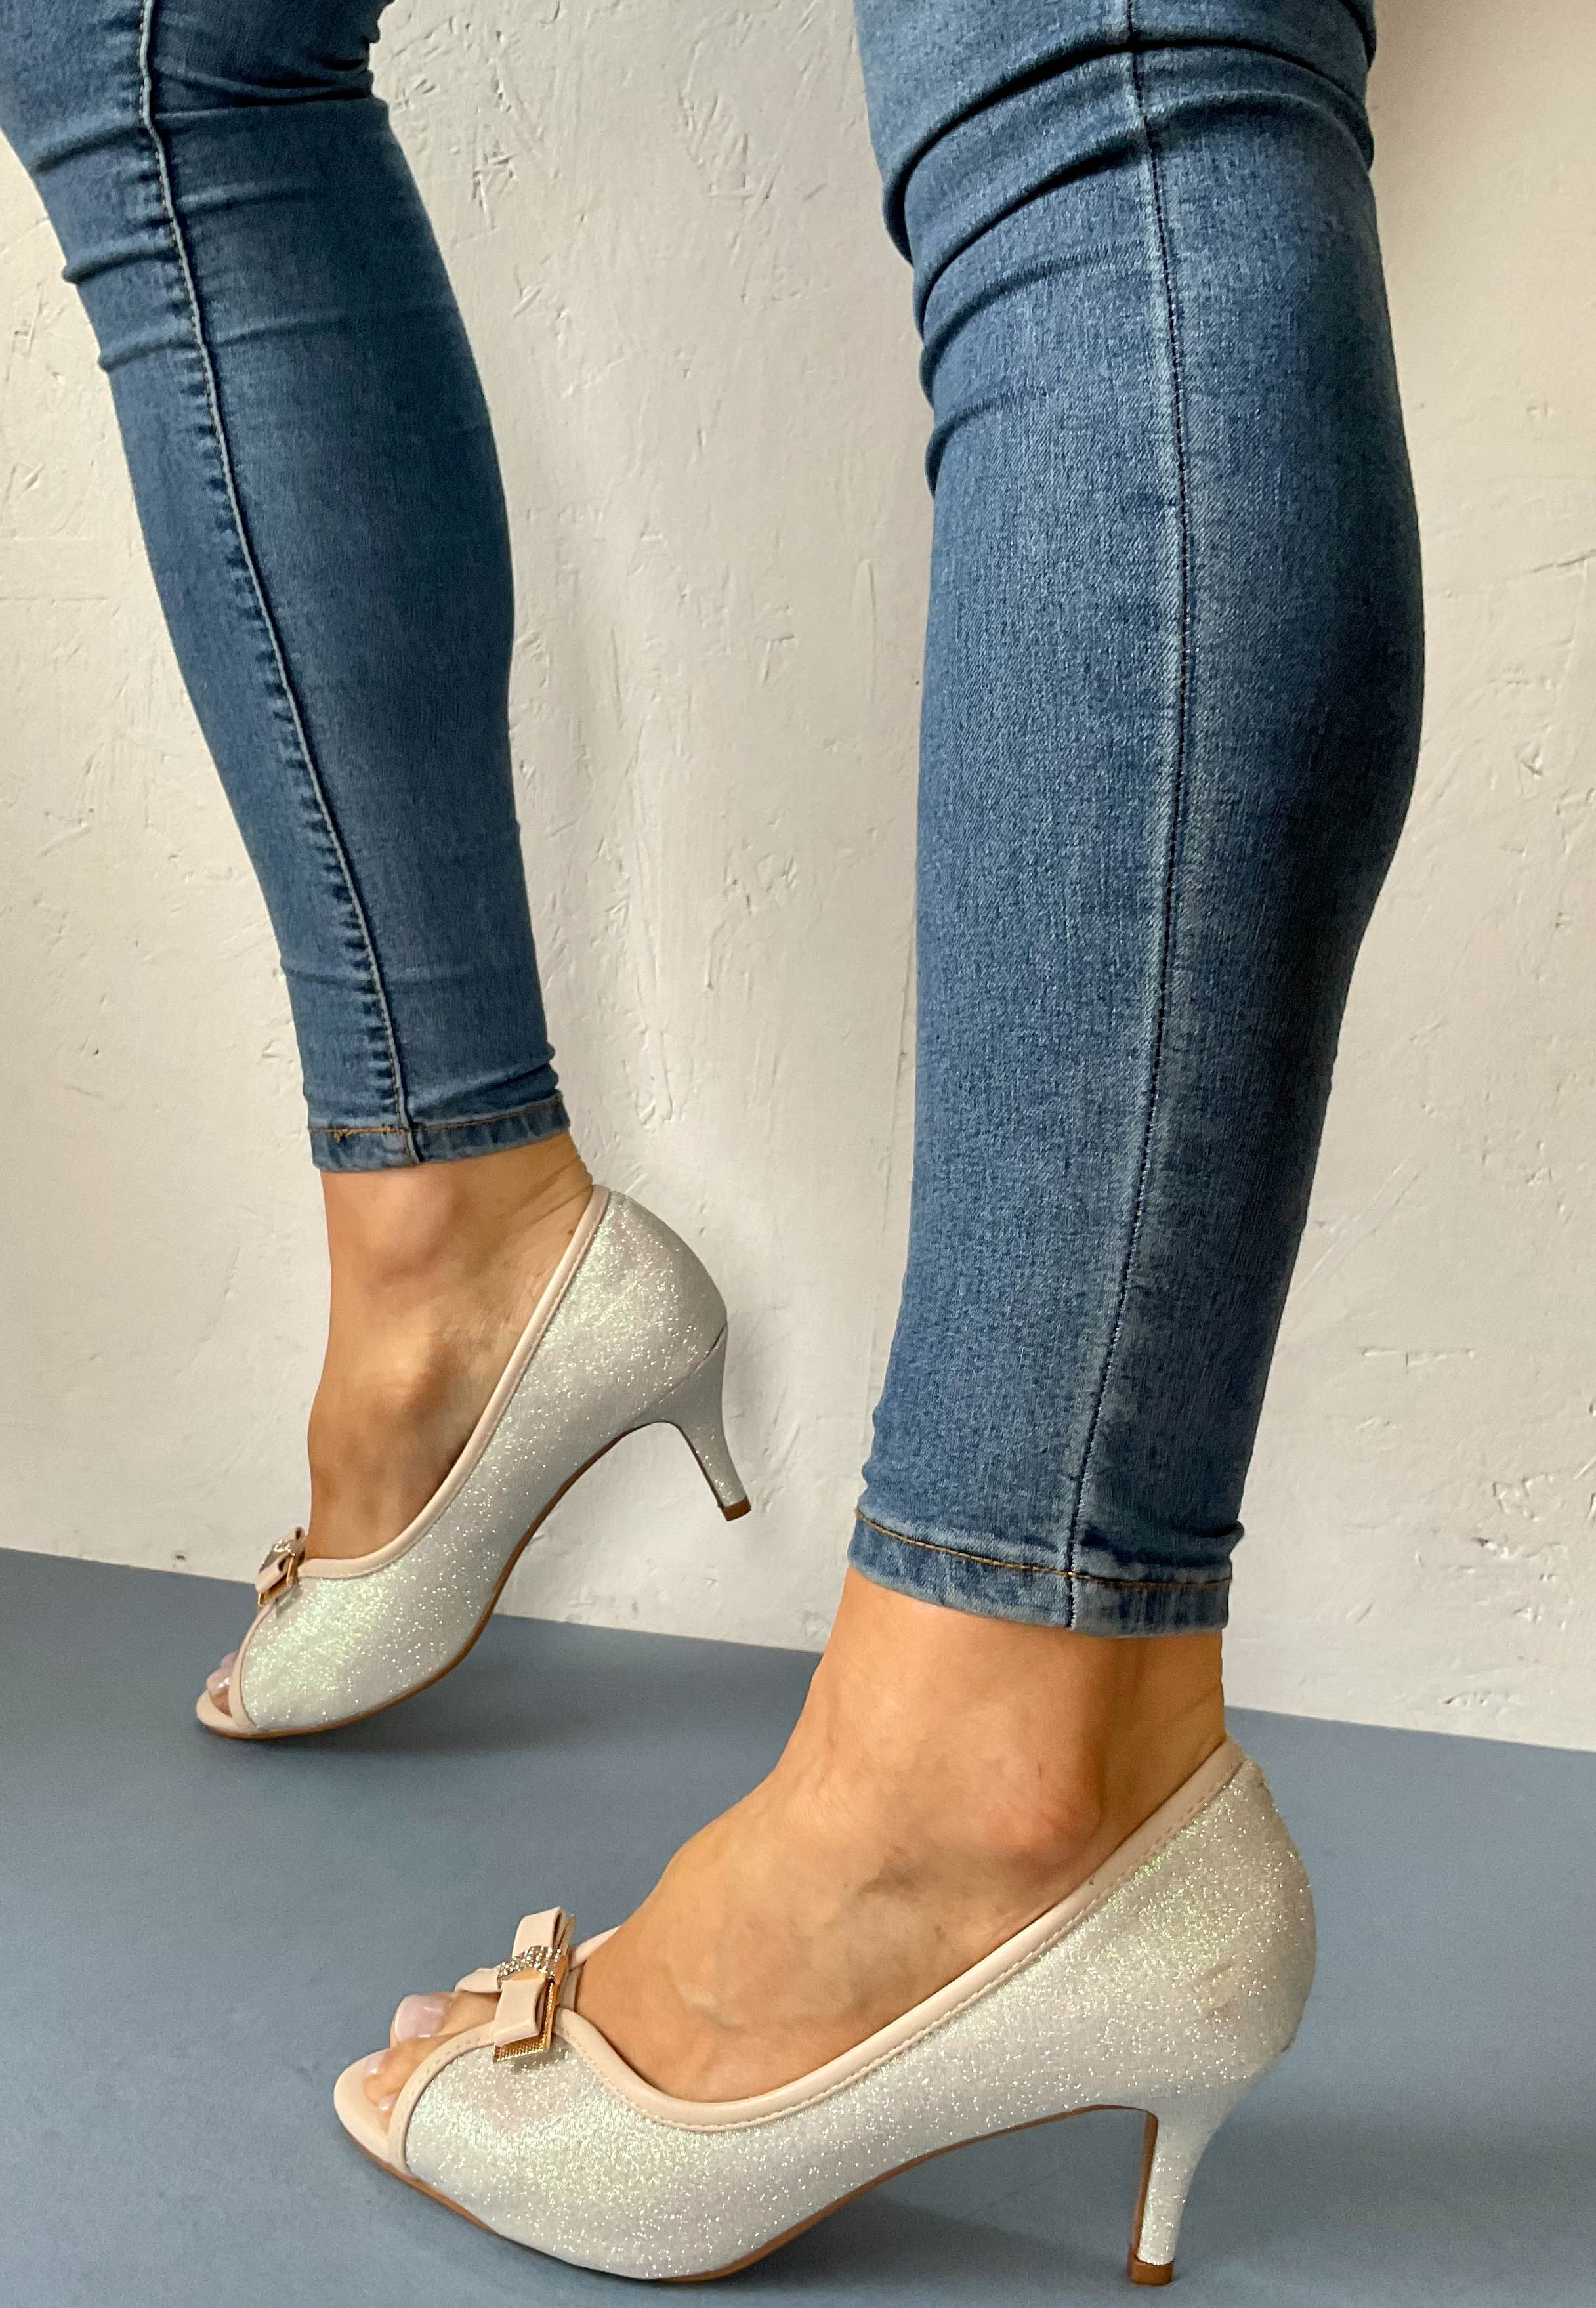 silver peep toe shoes